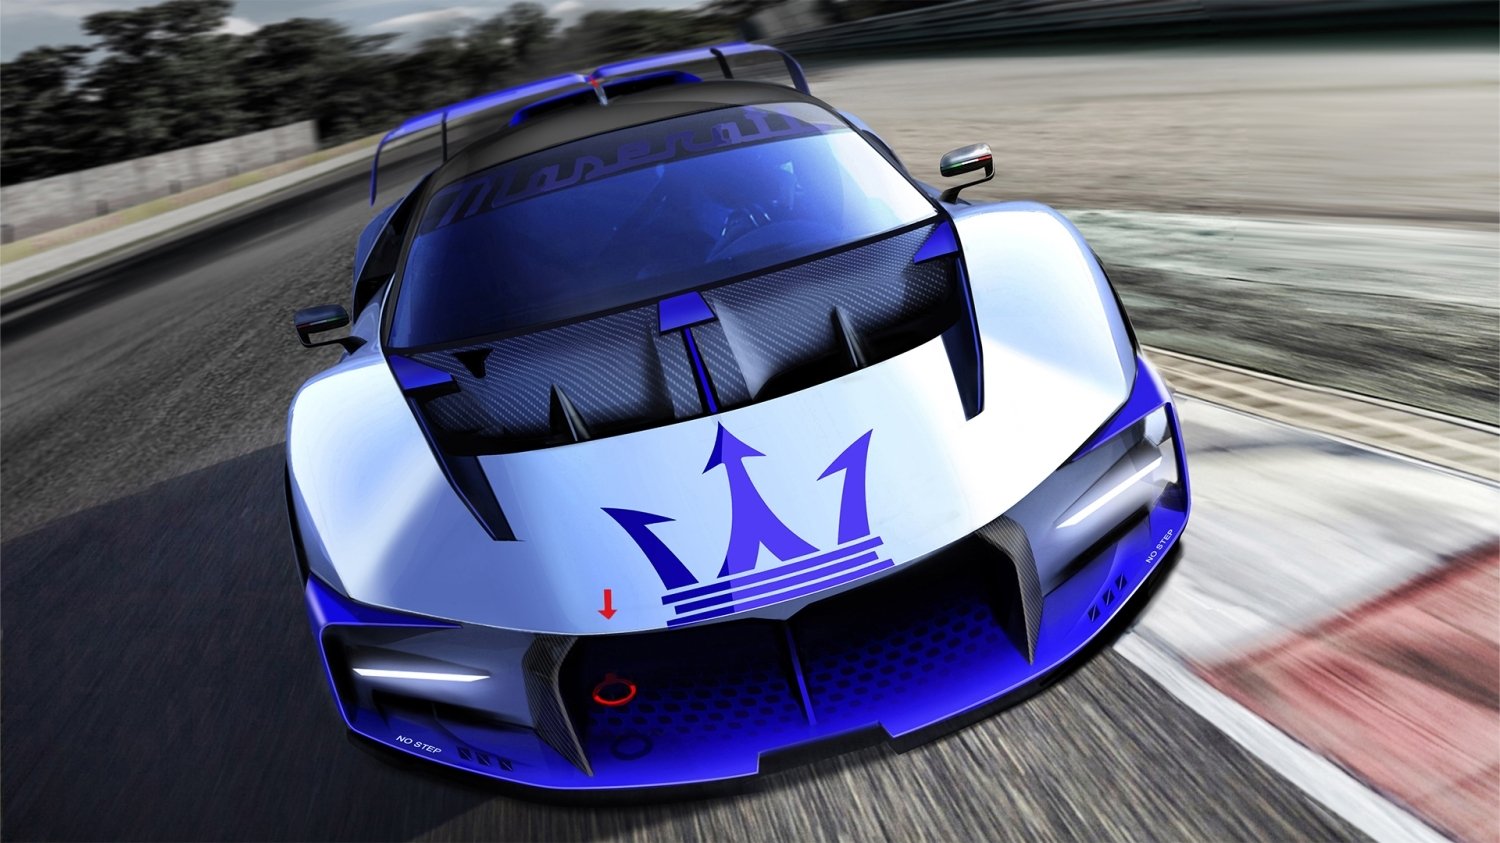 Maserati presents Project24